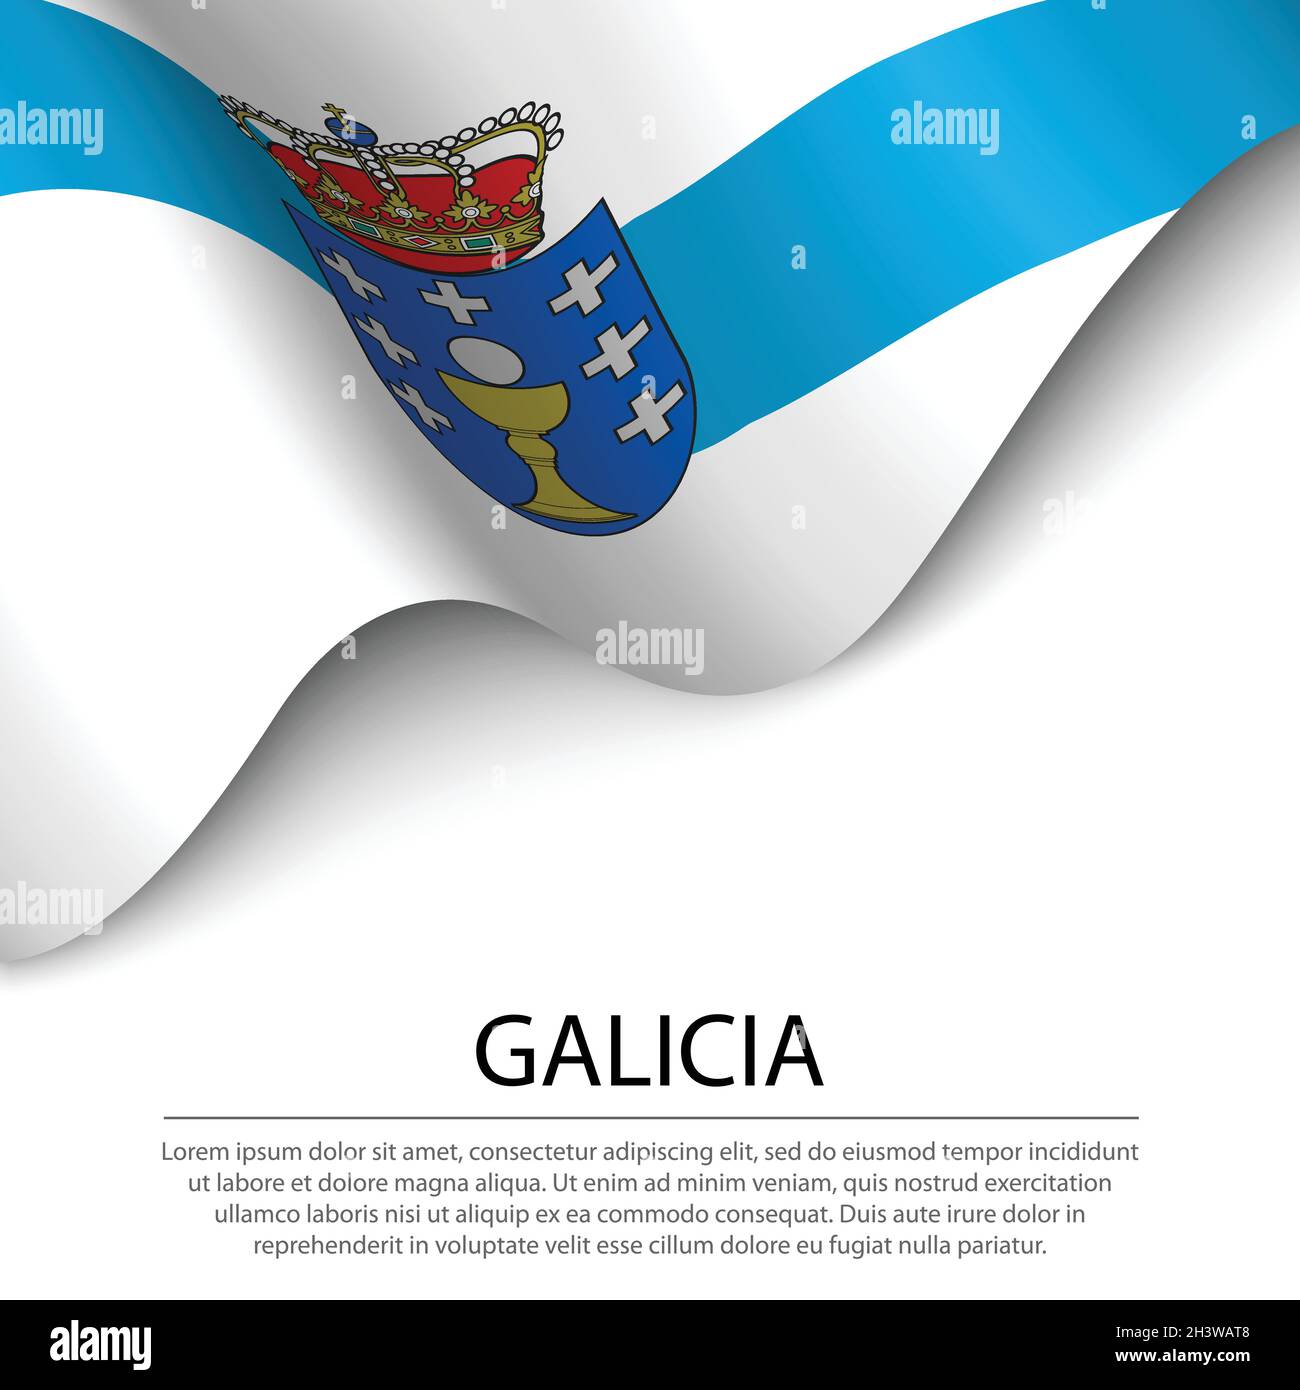 Bandera Galicia Stock Illustrations – 29 Bandera Galicia Stock  Illustrations, Vectors & Clipart - Dreamstime